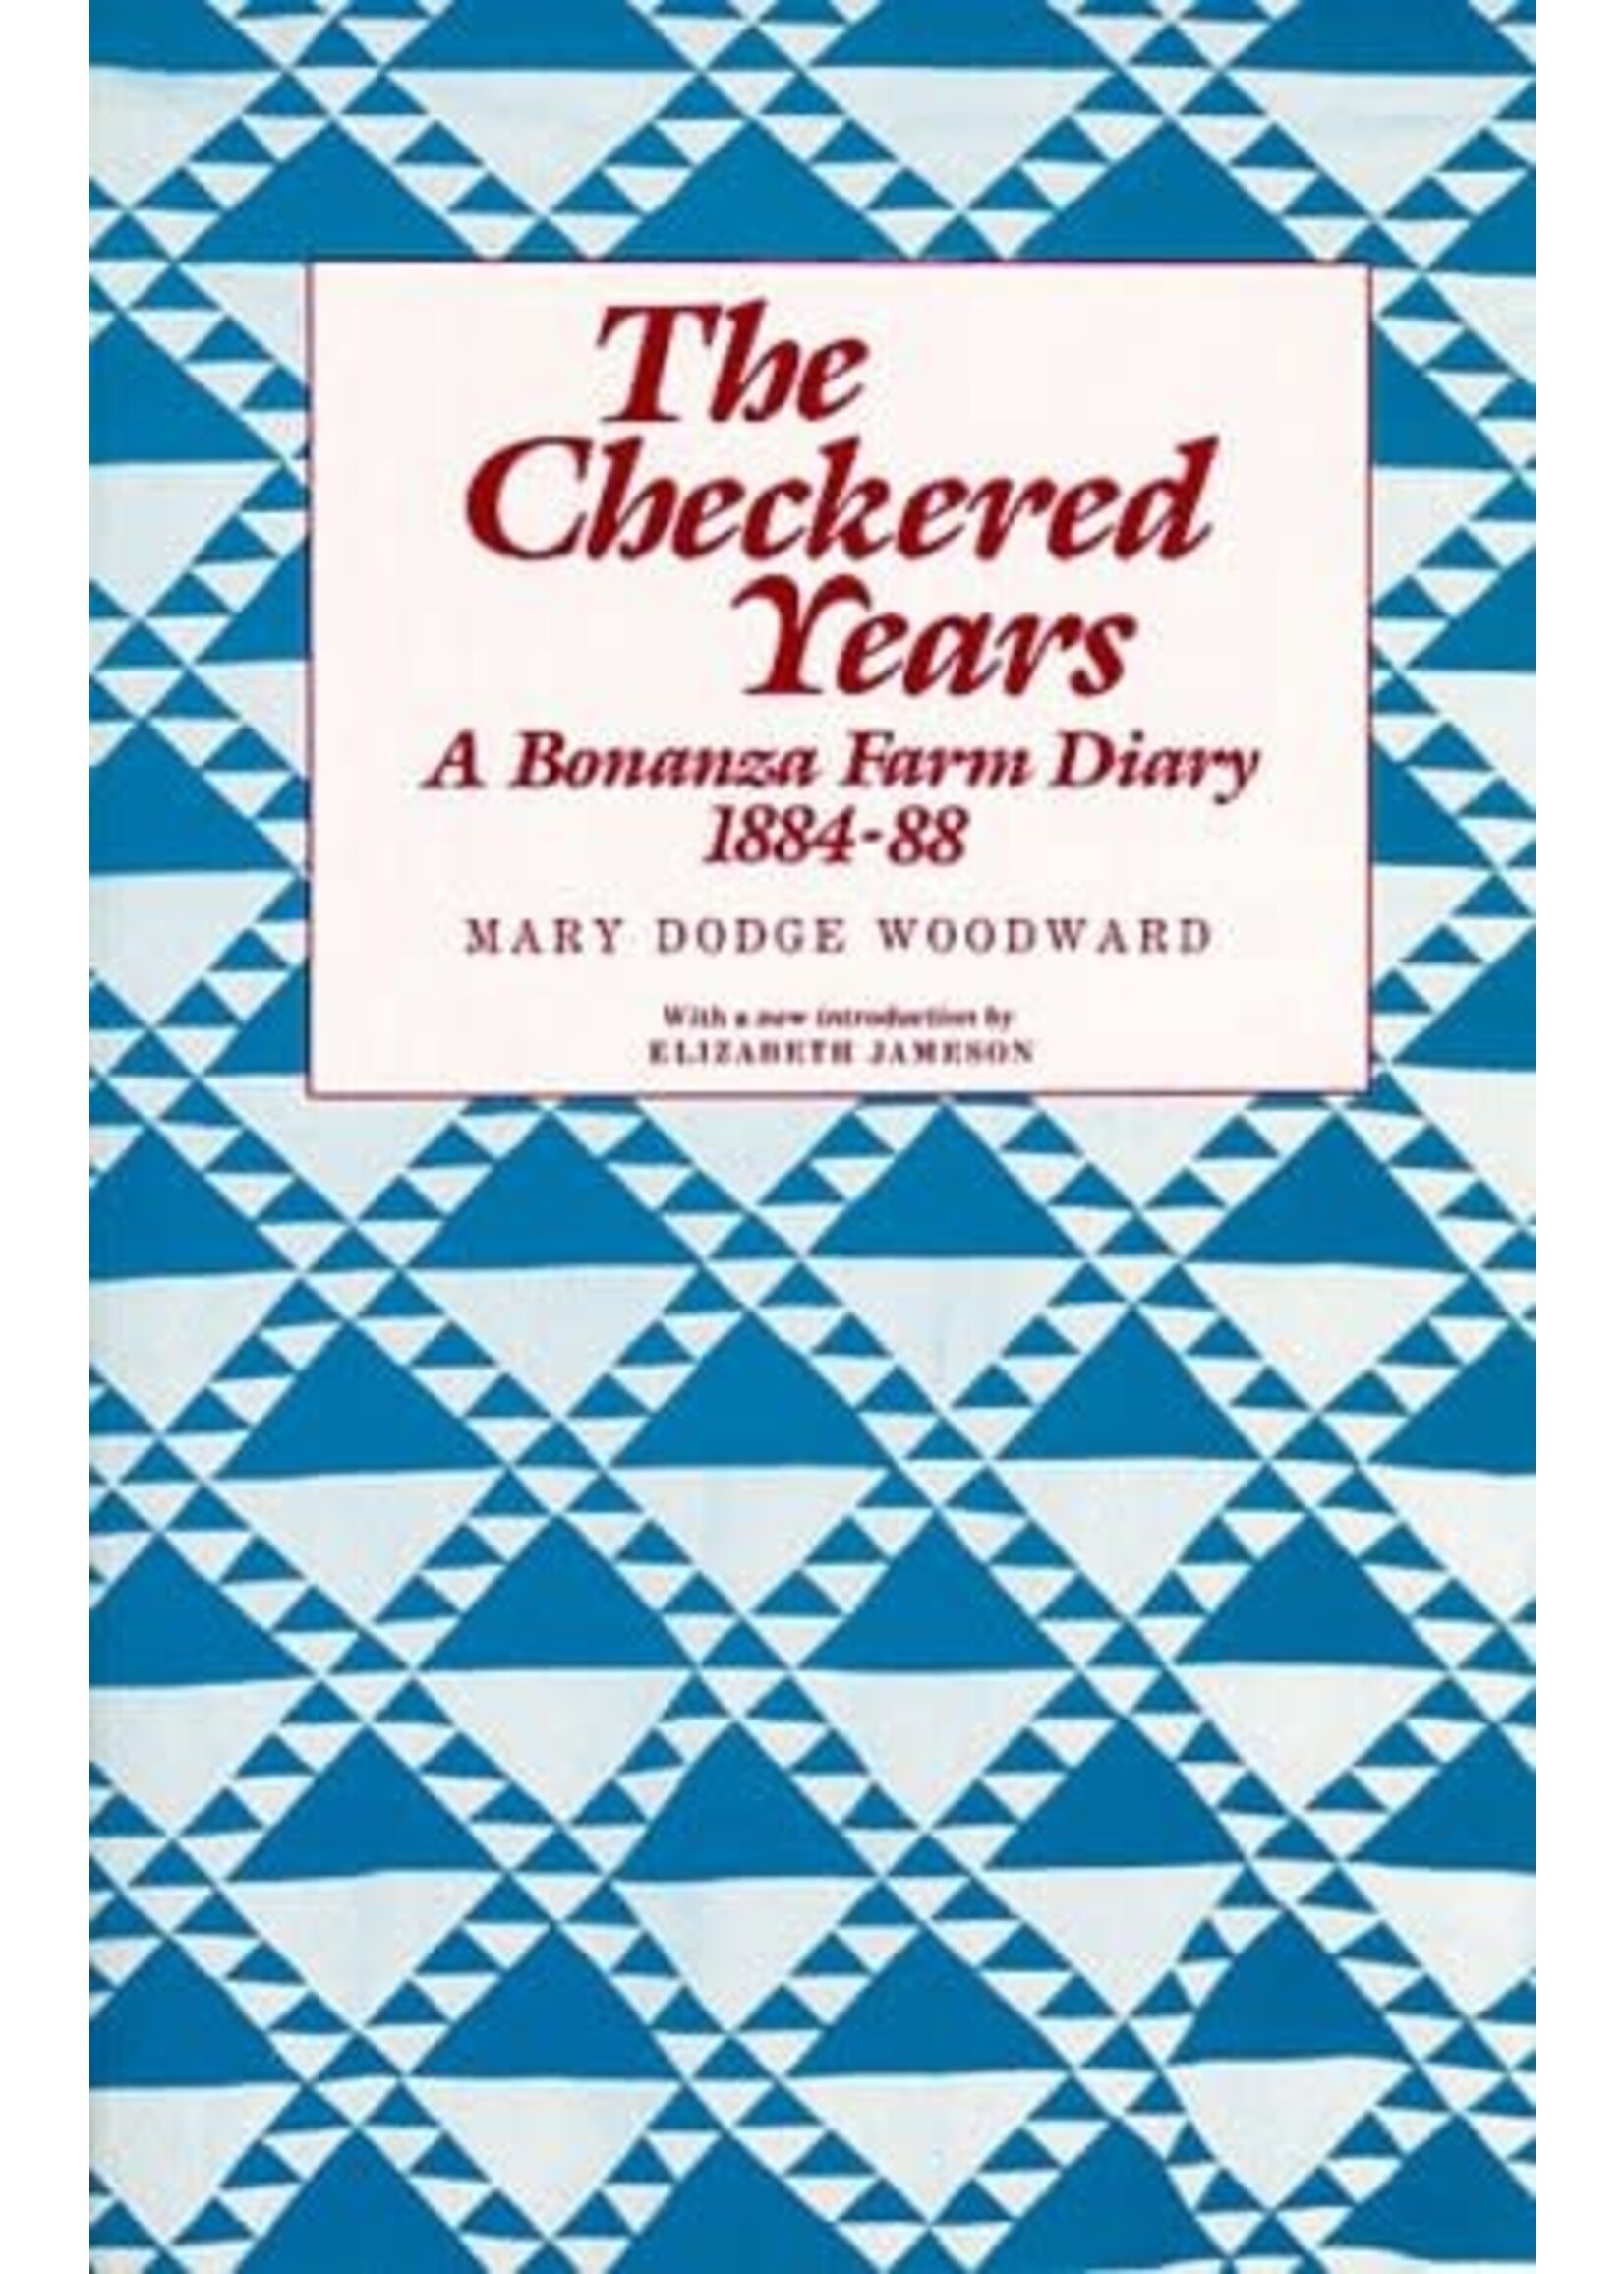 The Checkered Years: A Bonanza Farm Diary, 1884-88